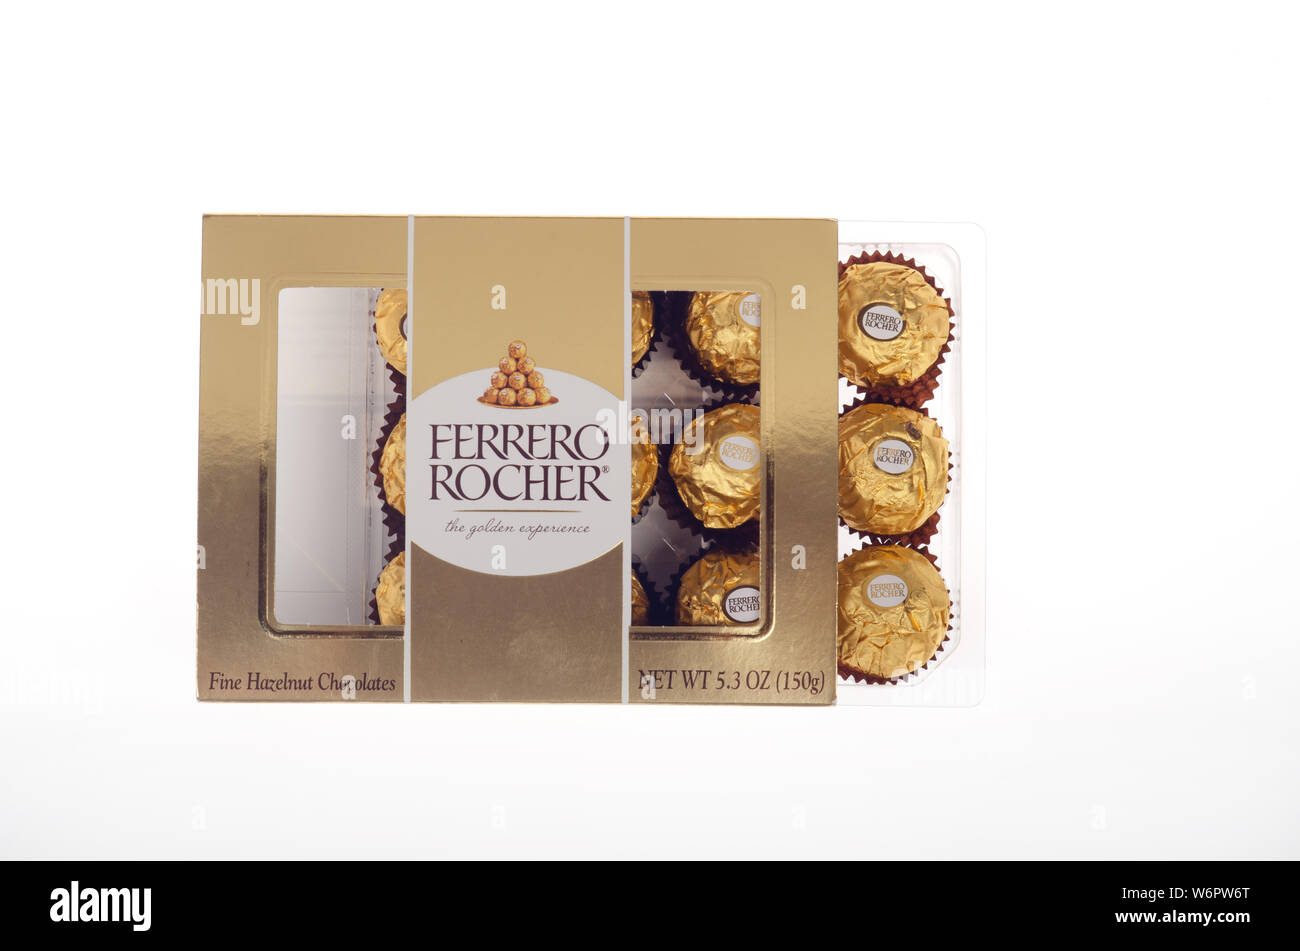 Cuore di selezione Ferrero Rocher ripieno di 10 praline di wafer alla